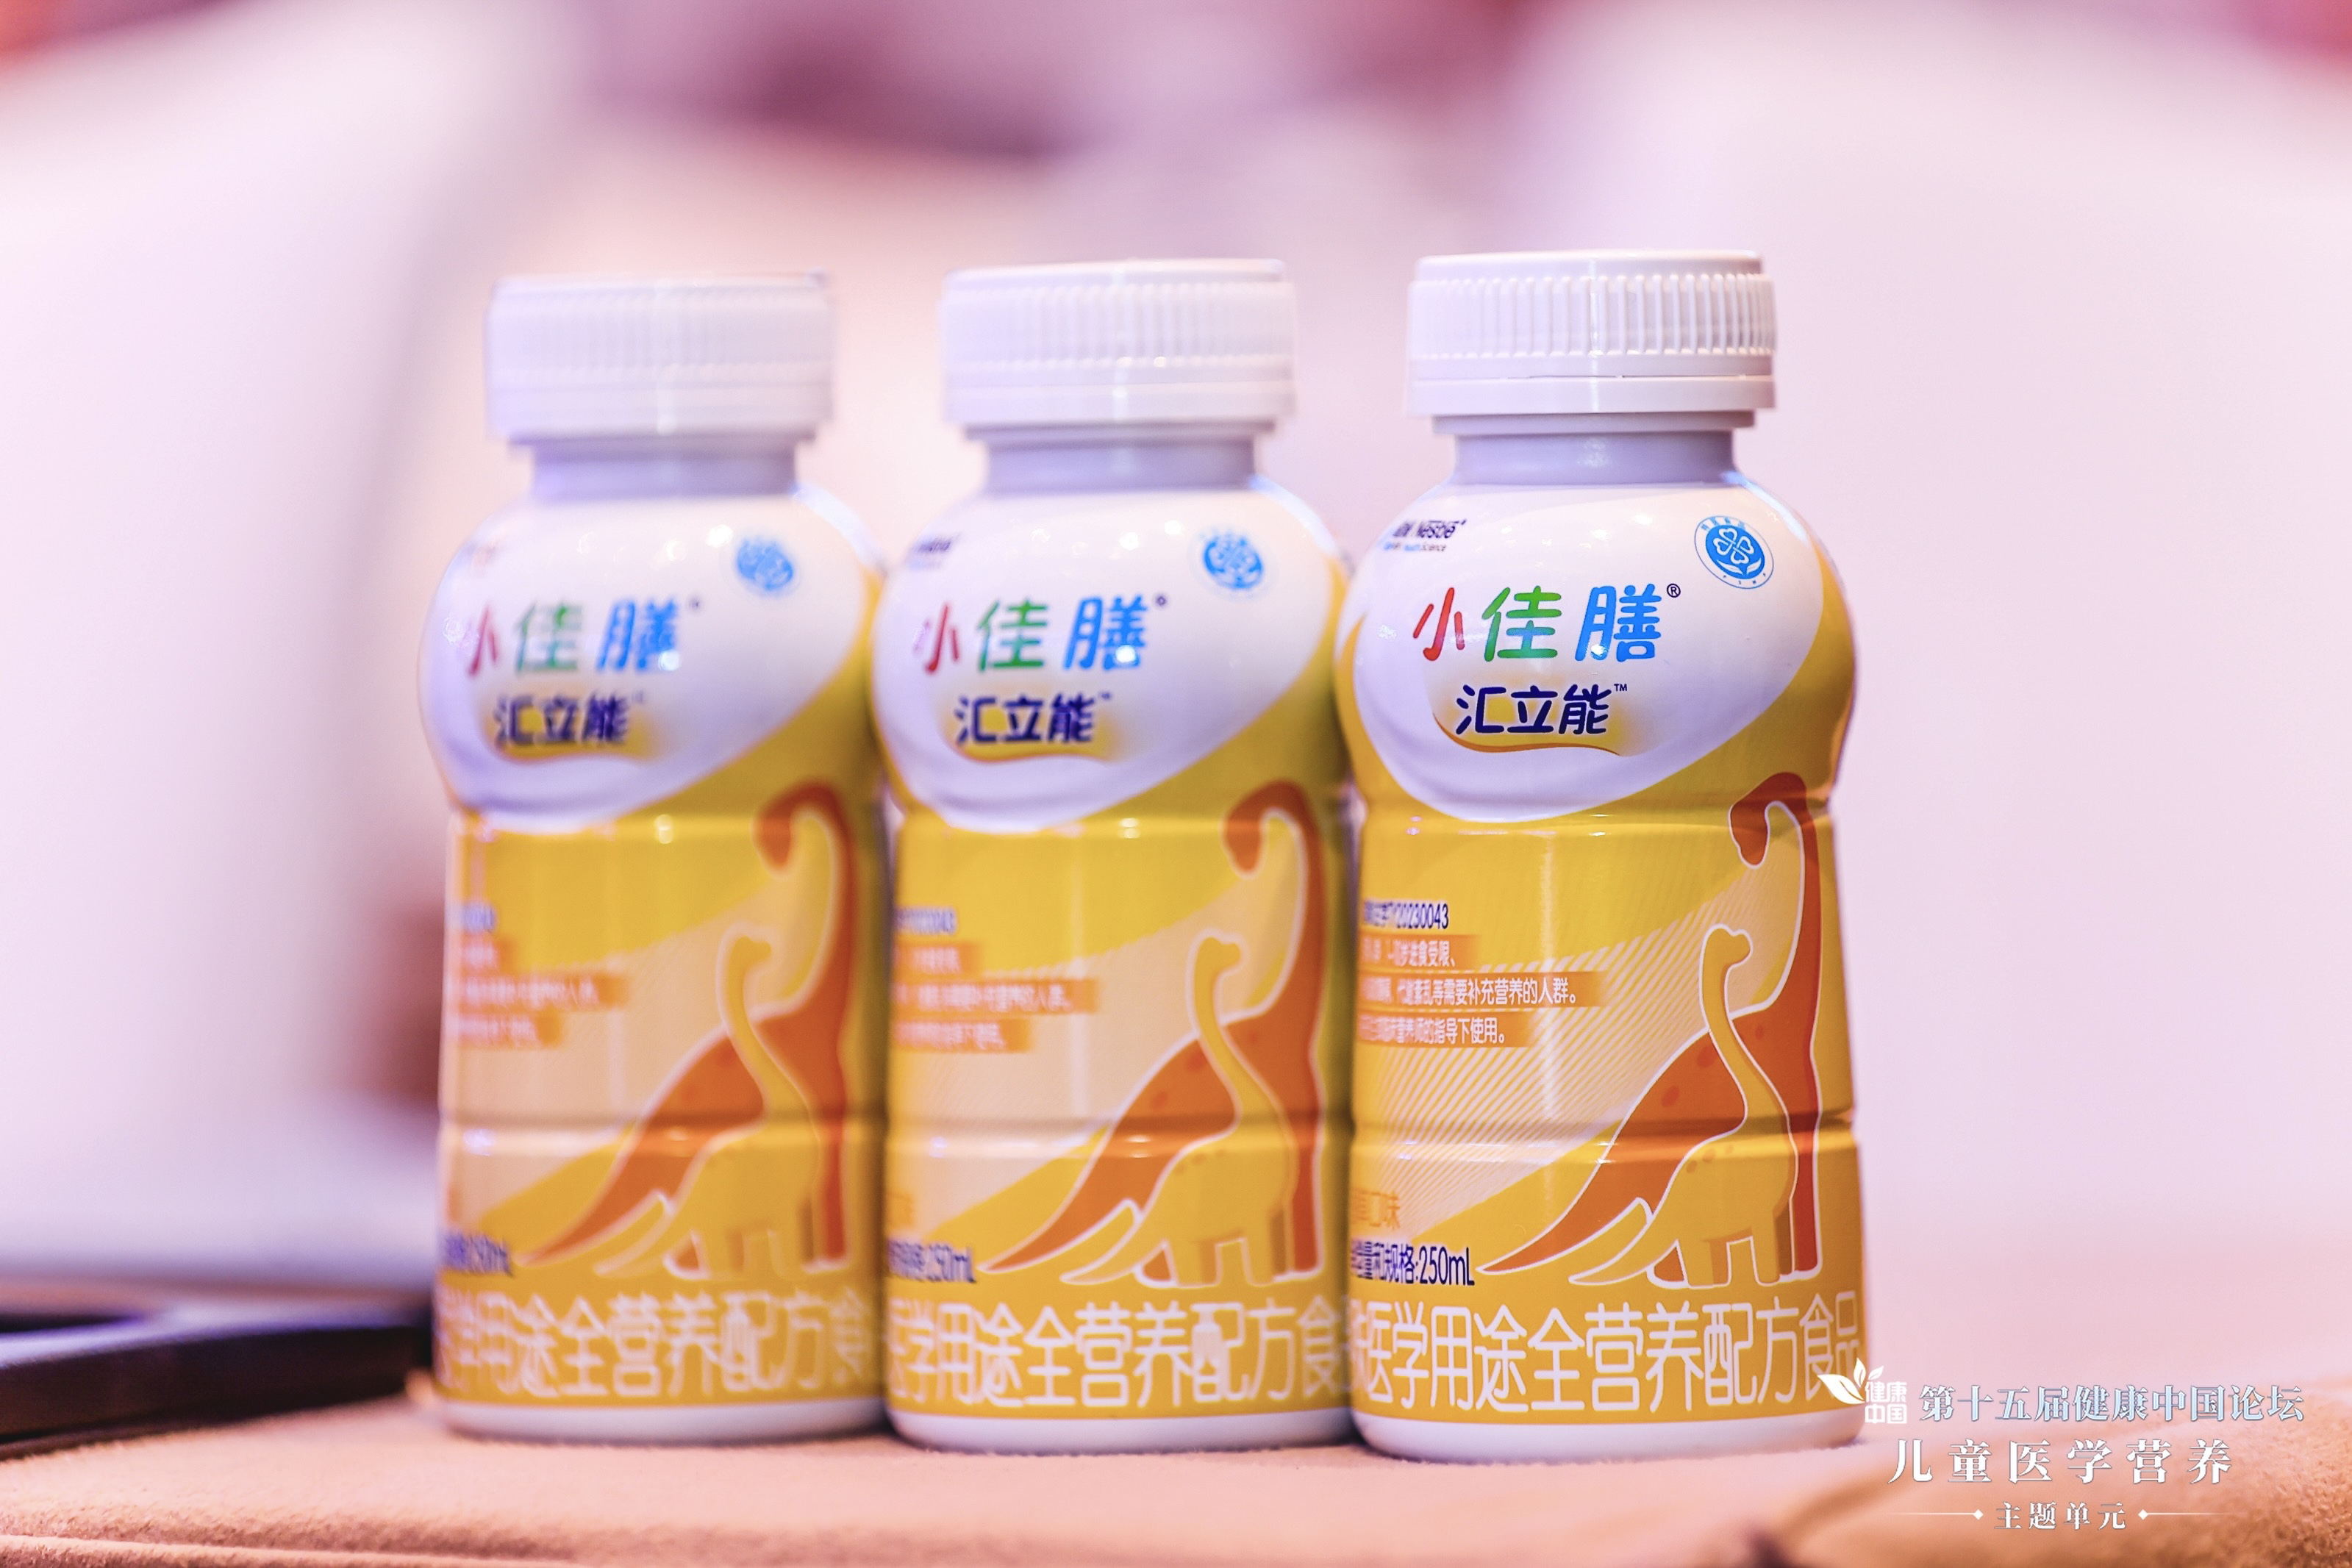 雀巢健康科学推出国内首款儿科液体全营养特医食品小佳膳汇立能